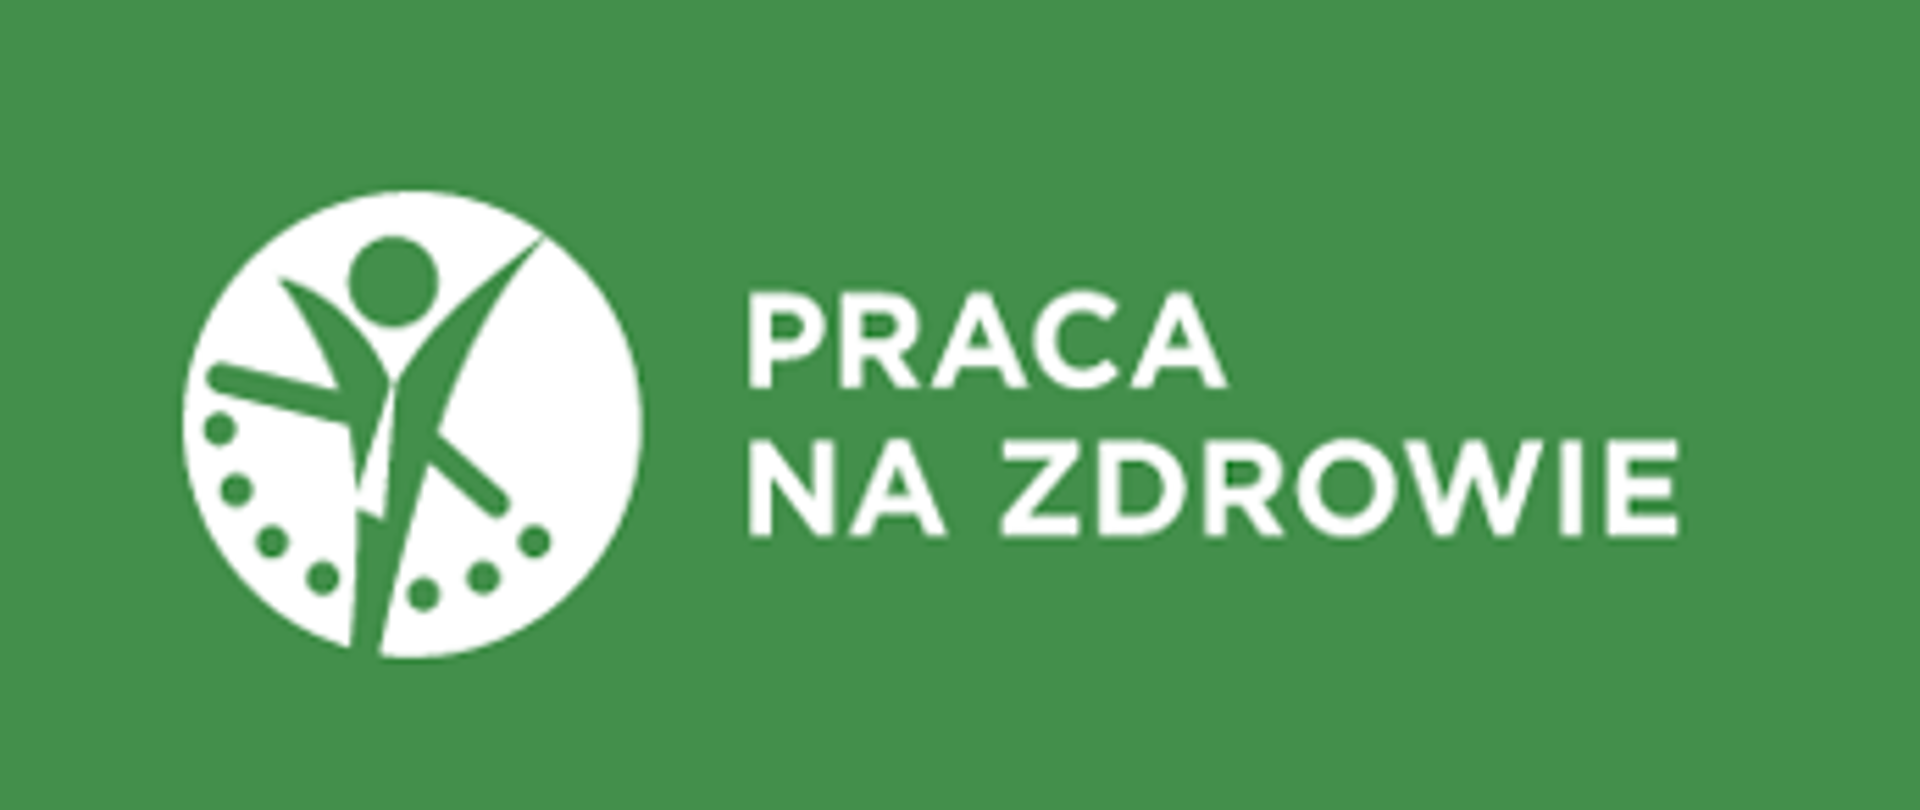 Logo portalu praca na zdrowie na zielonym tle